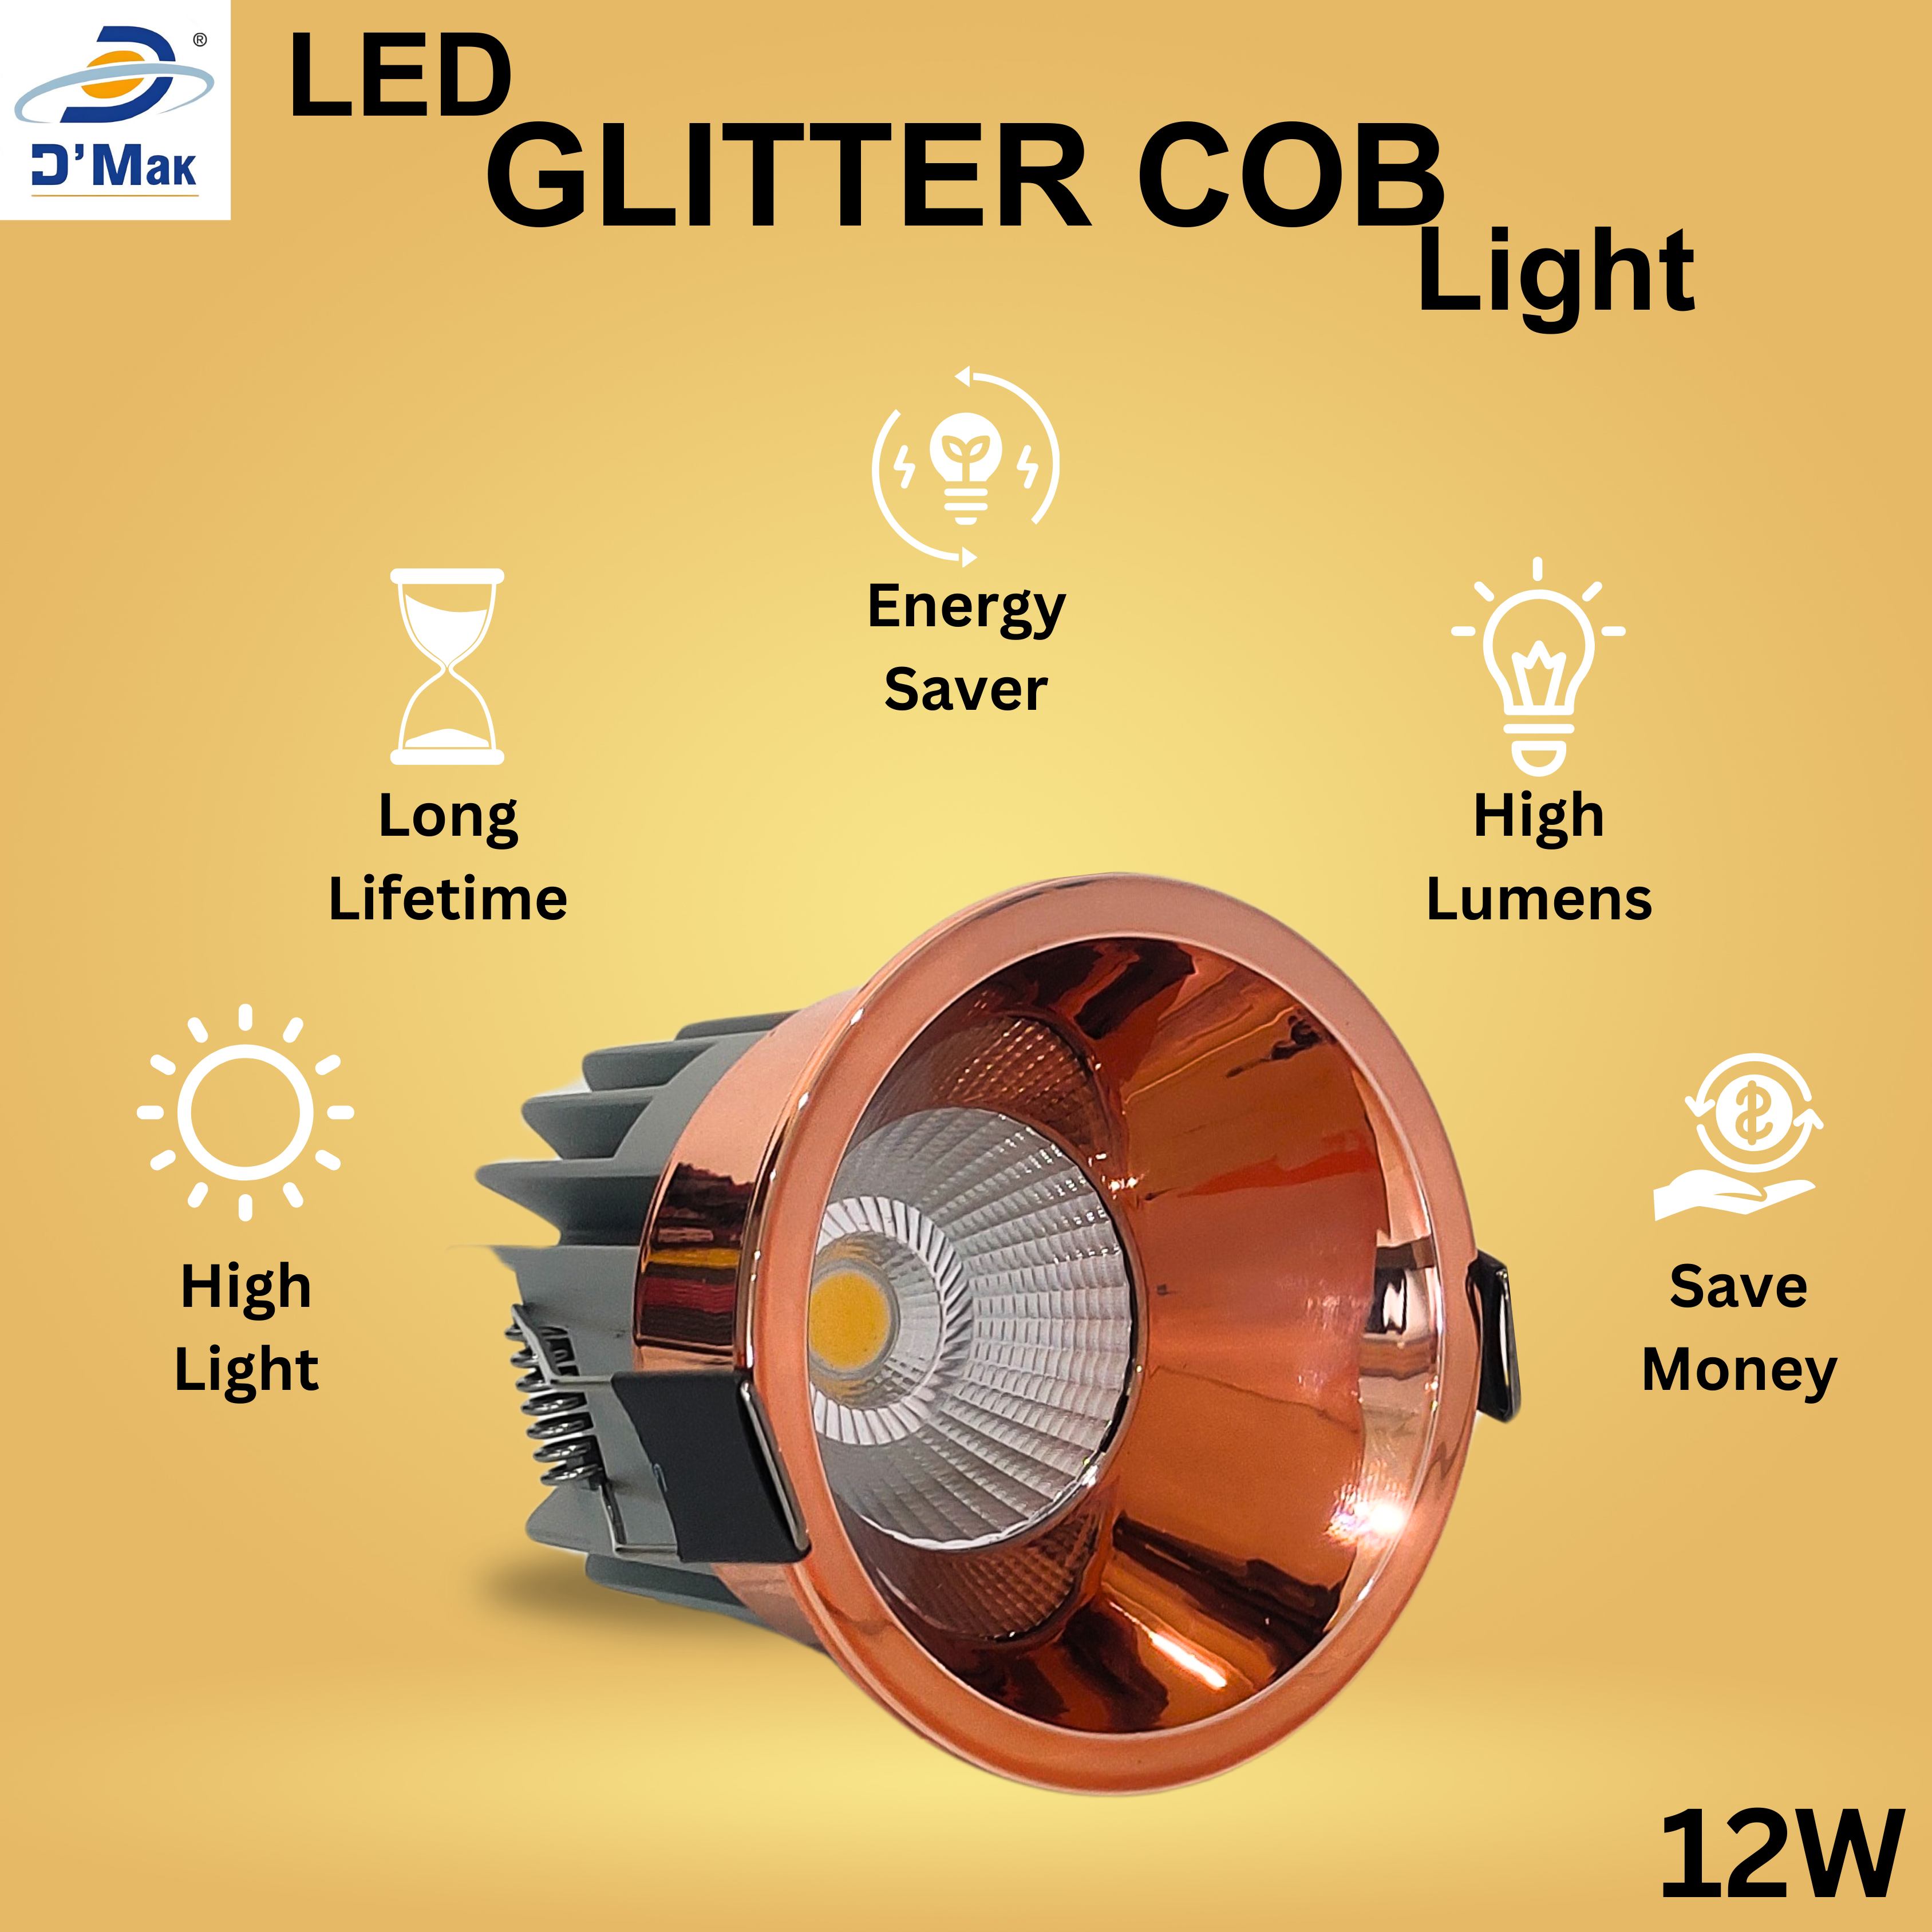 Glitter Coper LED COB Spot Light for POP/Recessed Lighting